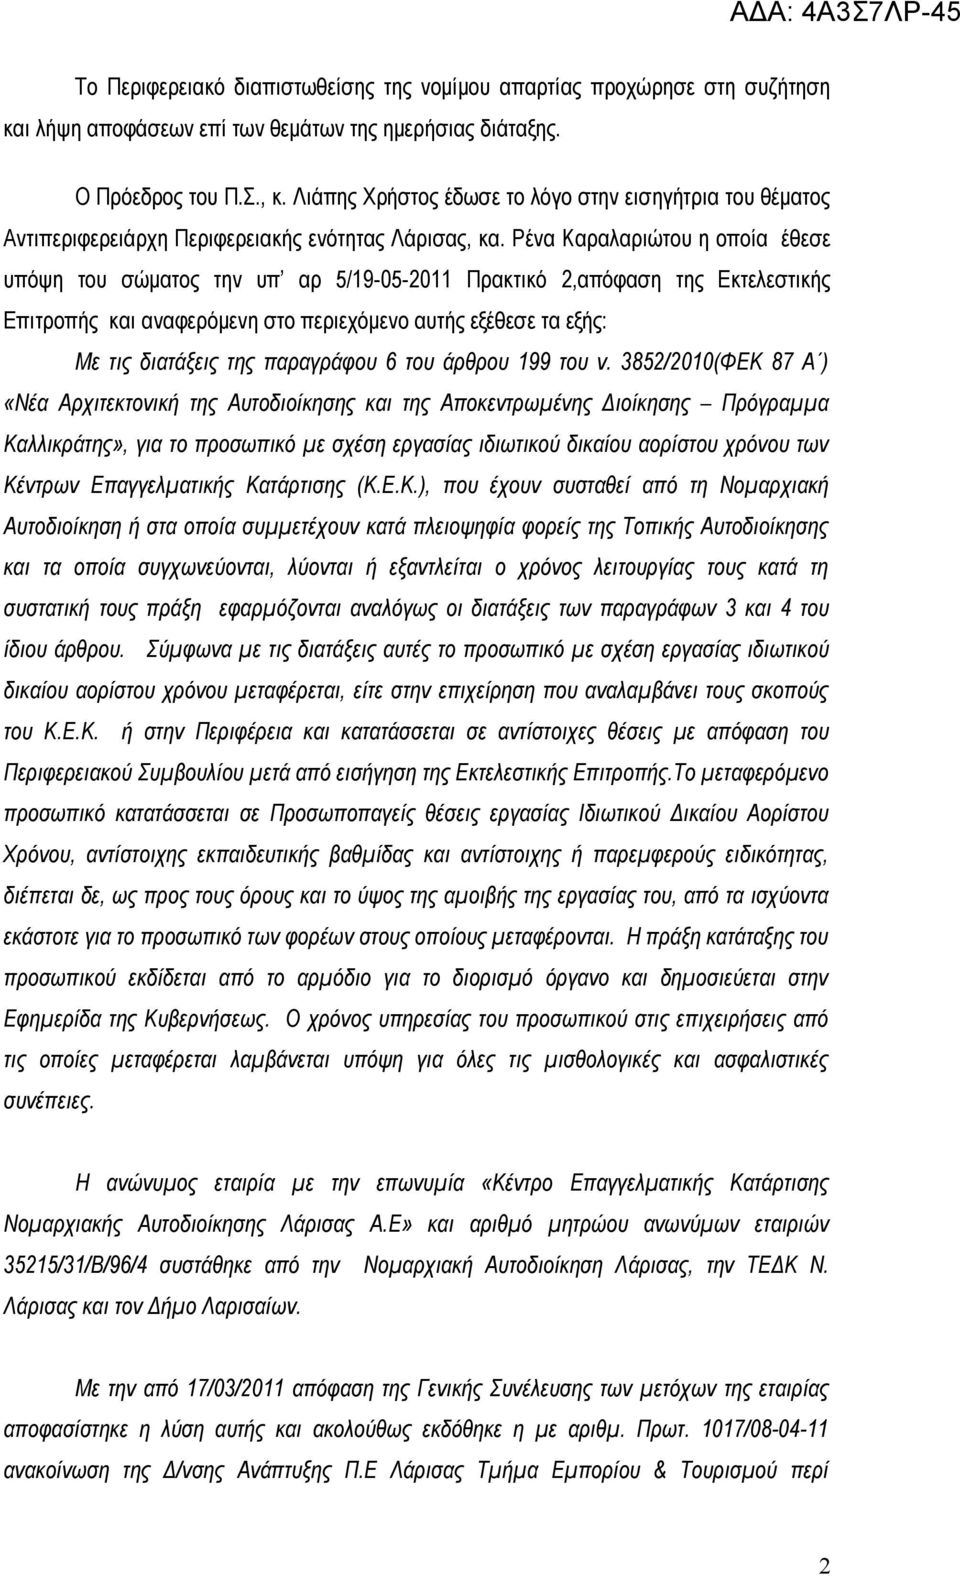 Ρένα Καραλαριώτου η οποία έθεσε υπόψη του σώματος την υπ αρ 5/19-05-2011 Πρακτικό 2,απόφαση της Εκτελεστικής Επιτροπής και αναφερόμενη στο περιεχόμενο αυτής εξέθεσε τα εξής: Με τις διατάξεις της